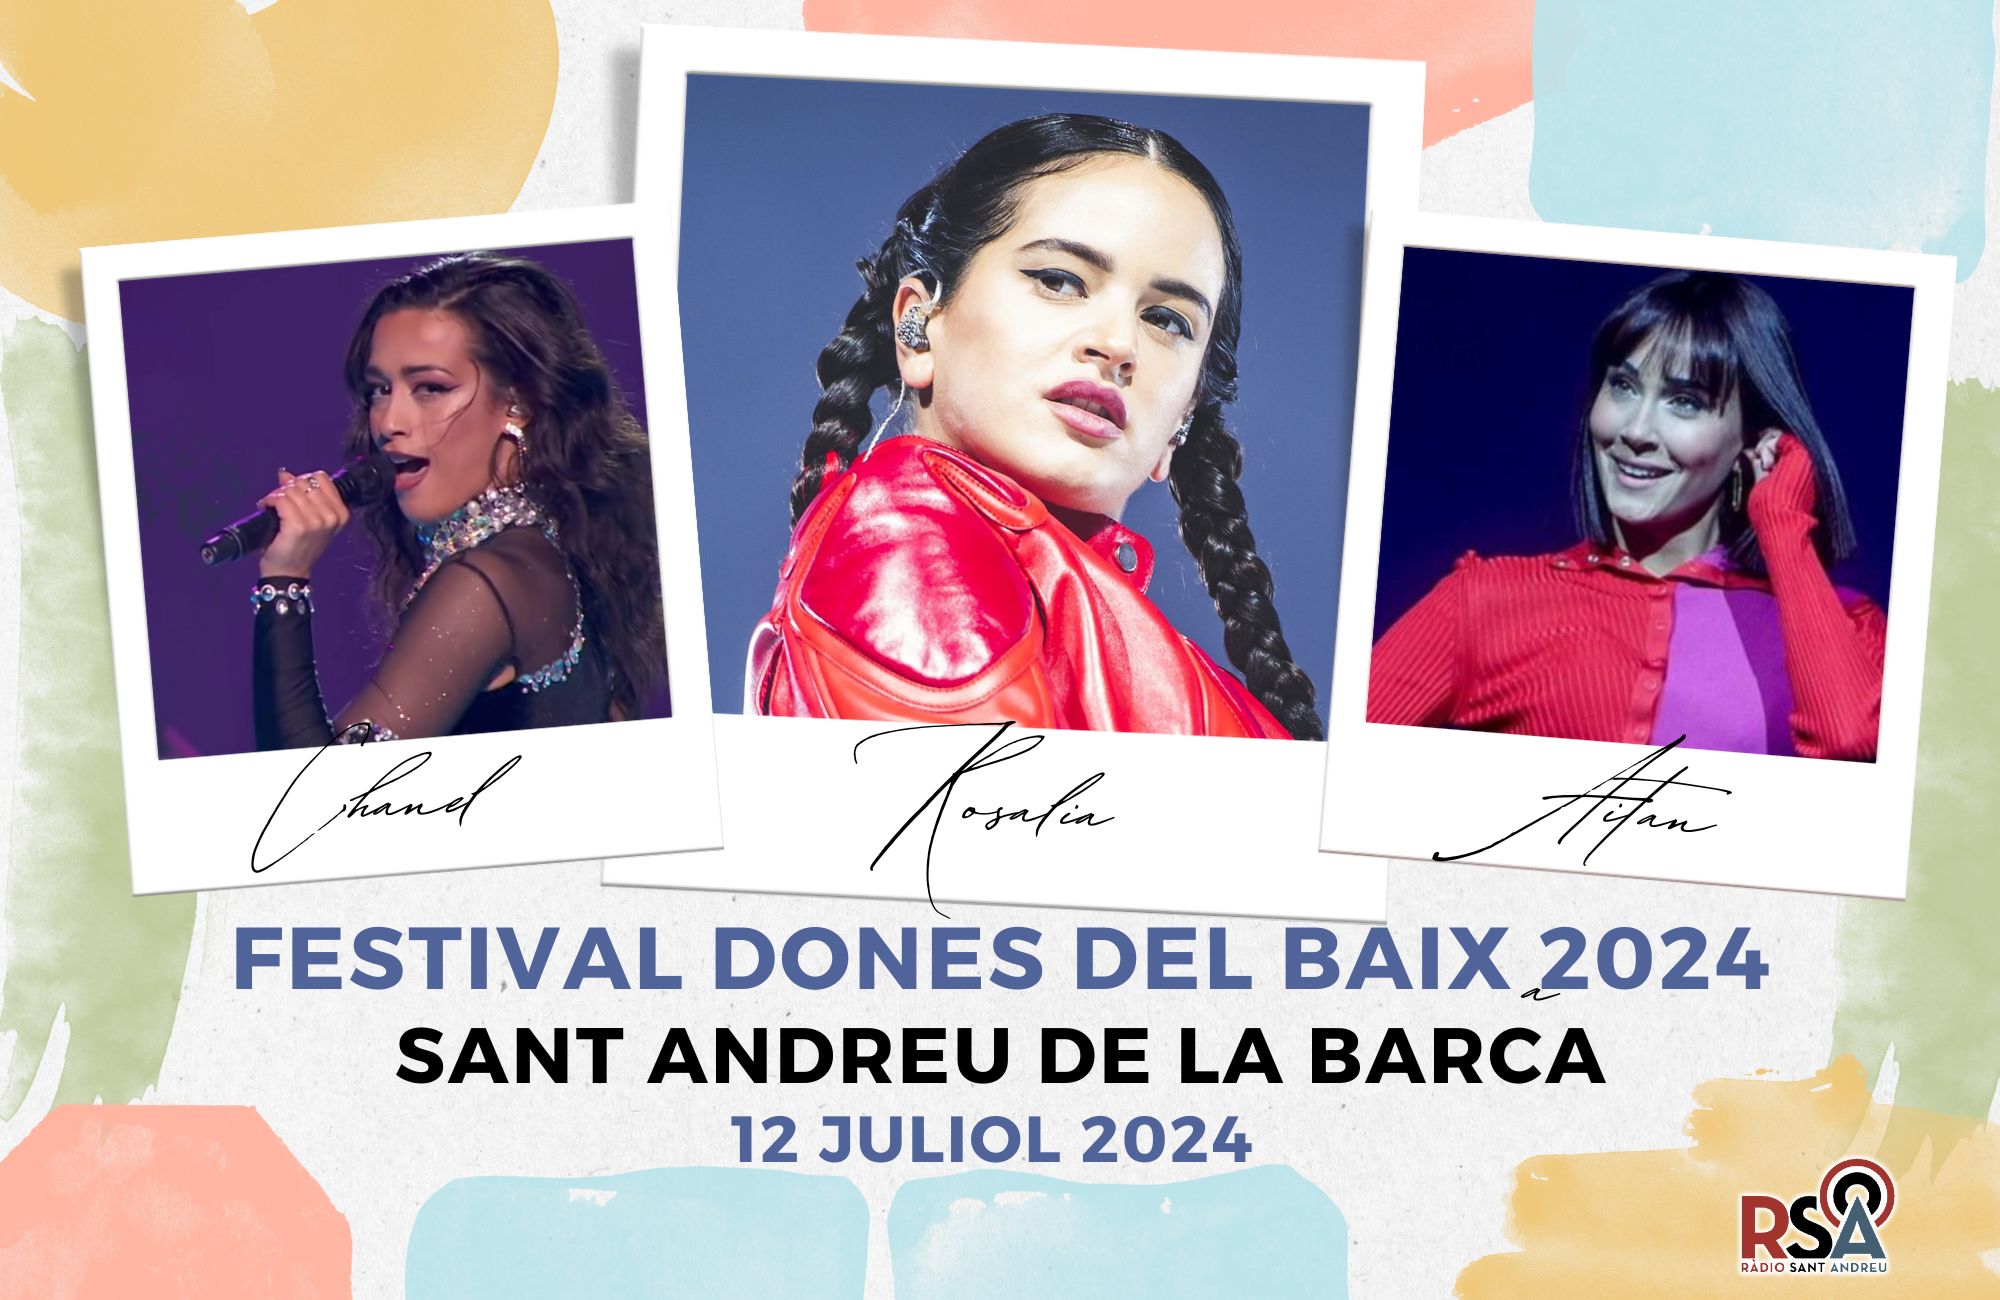 La Bustia Festival dones del Baix 2024 Sant Andreu Radio Sant Andreu 28 desembre 2023